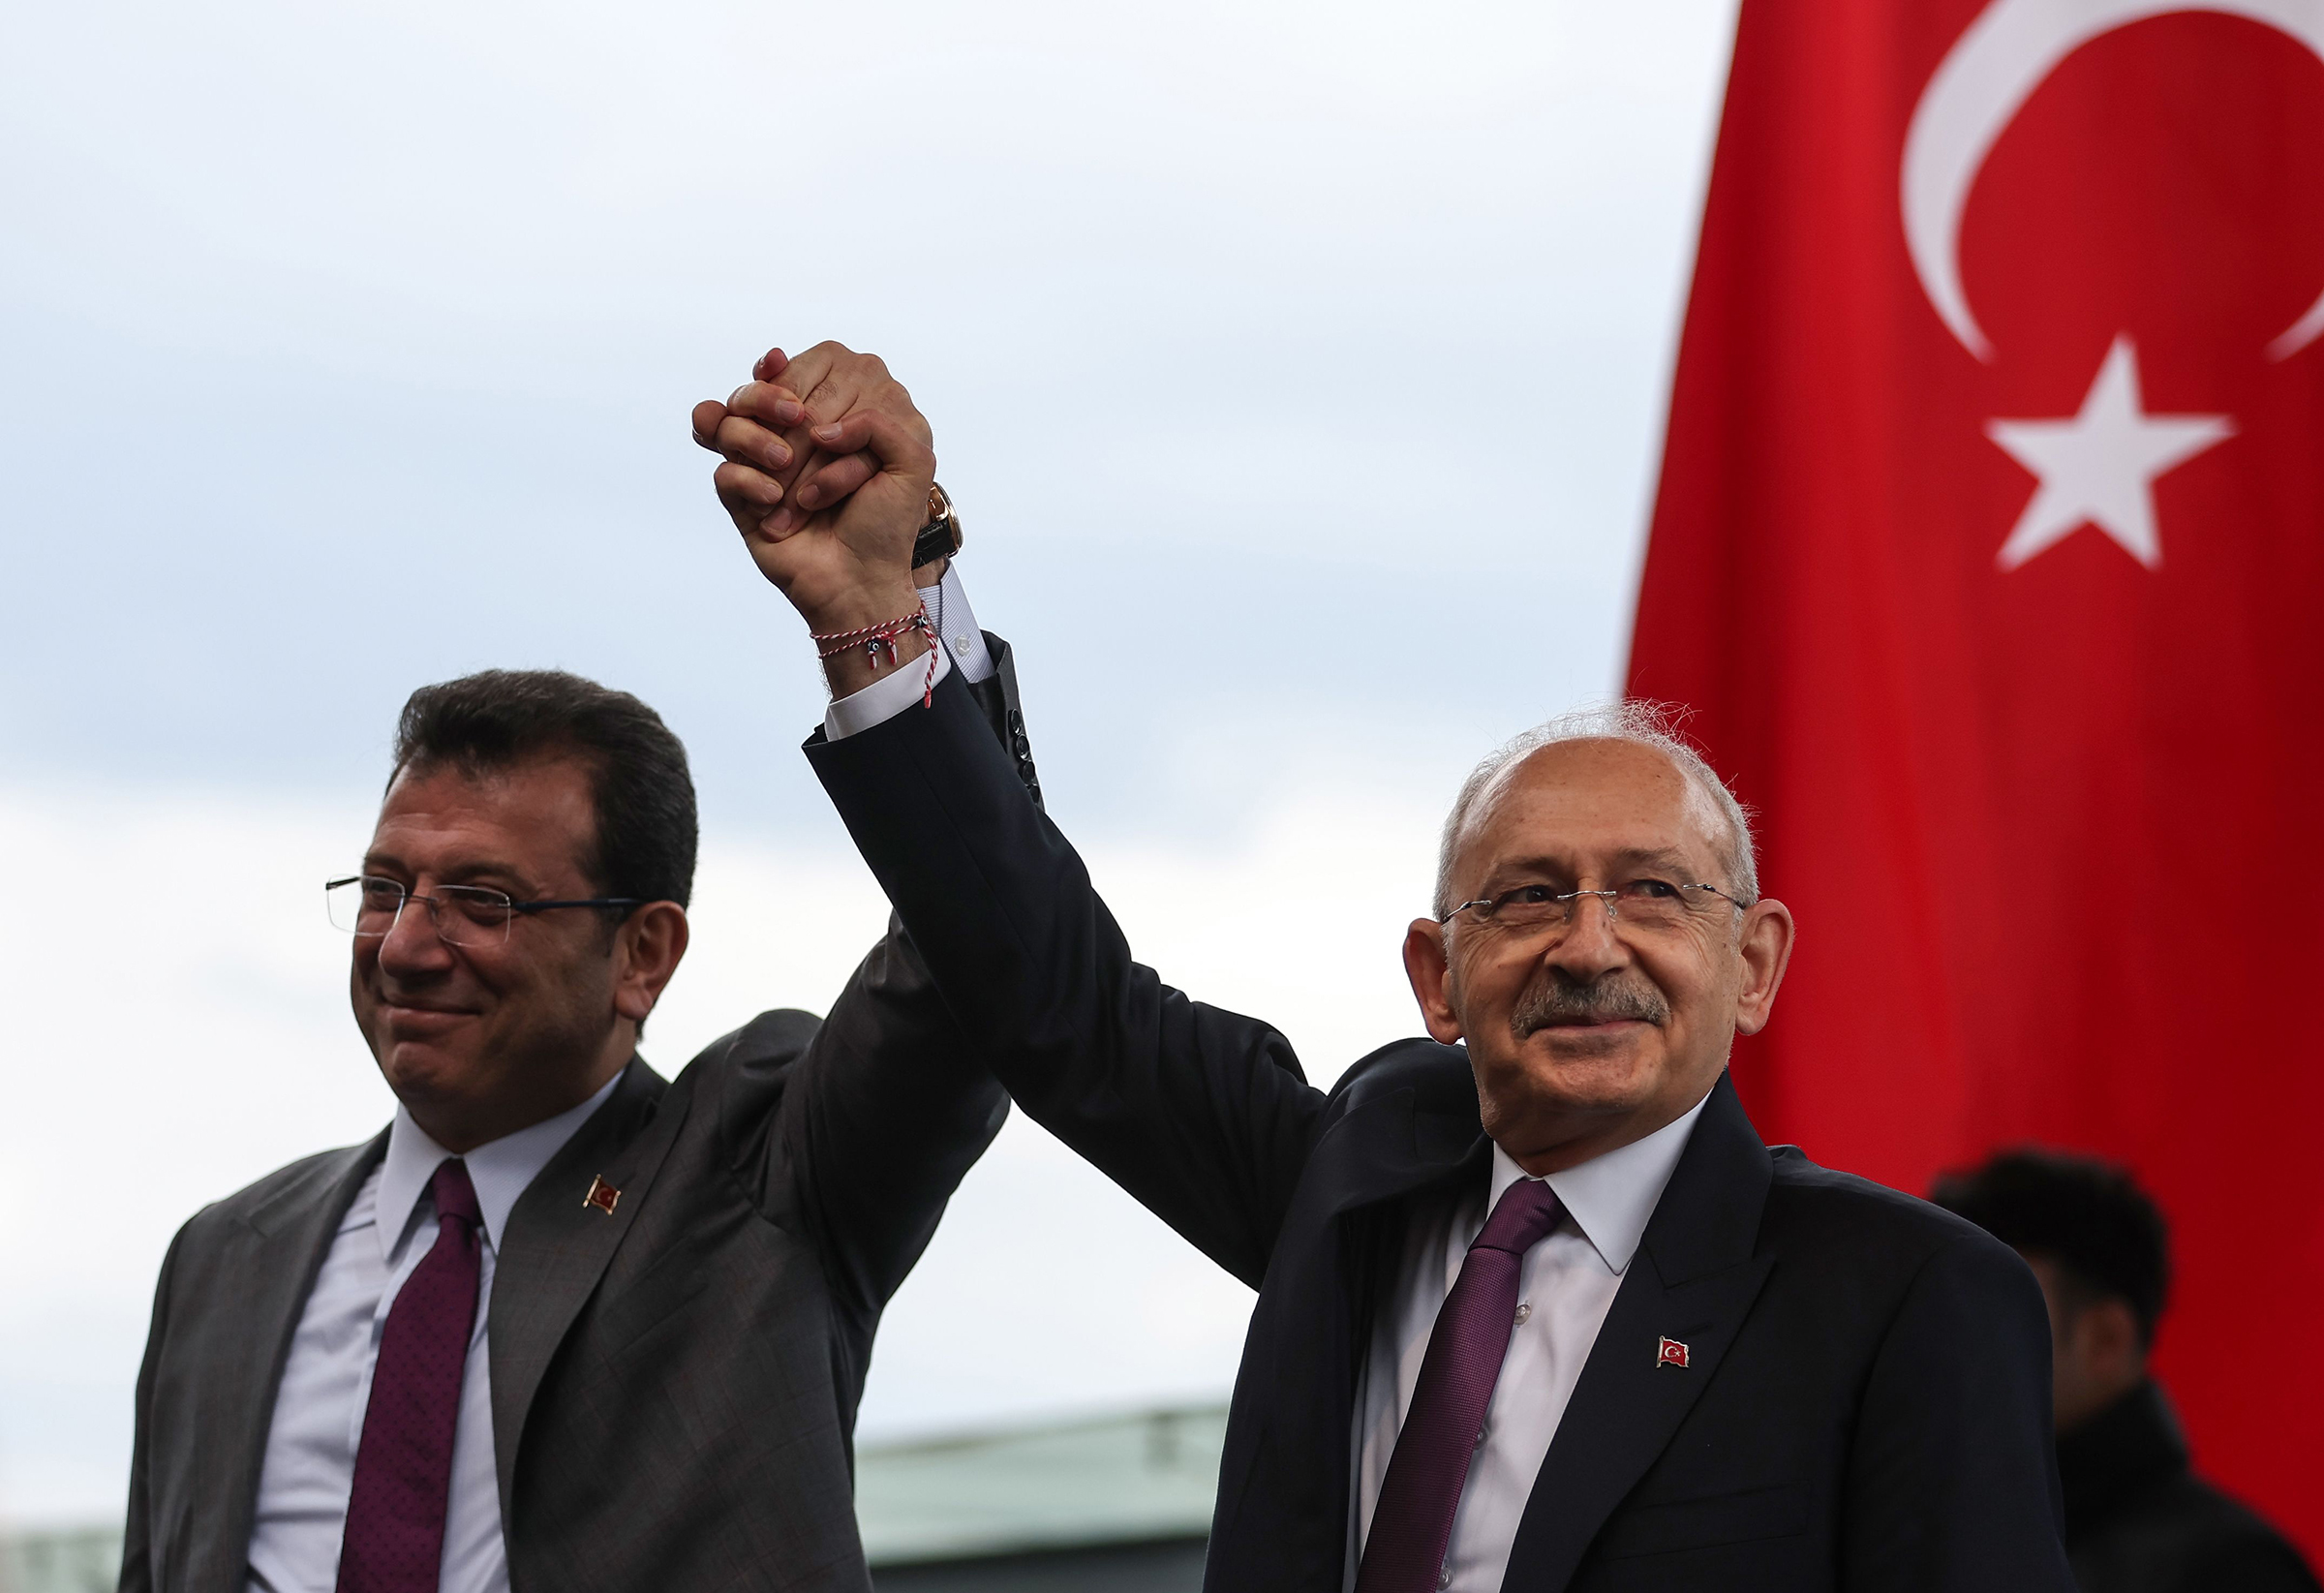 Kılıçdaroğlu with Istanbul mayor Ekrem Imamoglu, left, attending a public event in Istanbul on March 26. (Erdem Sahin—EPA-EFE/Shutterstock)